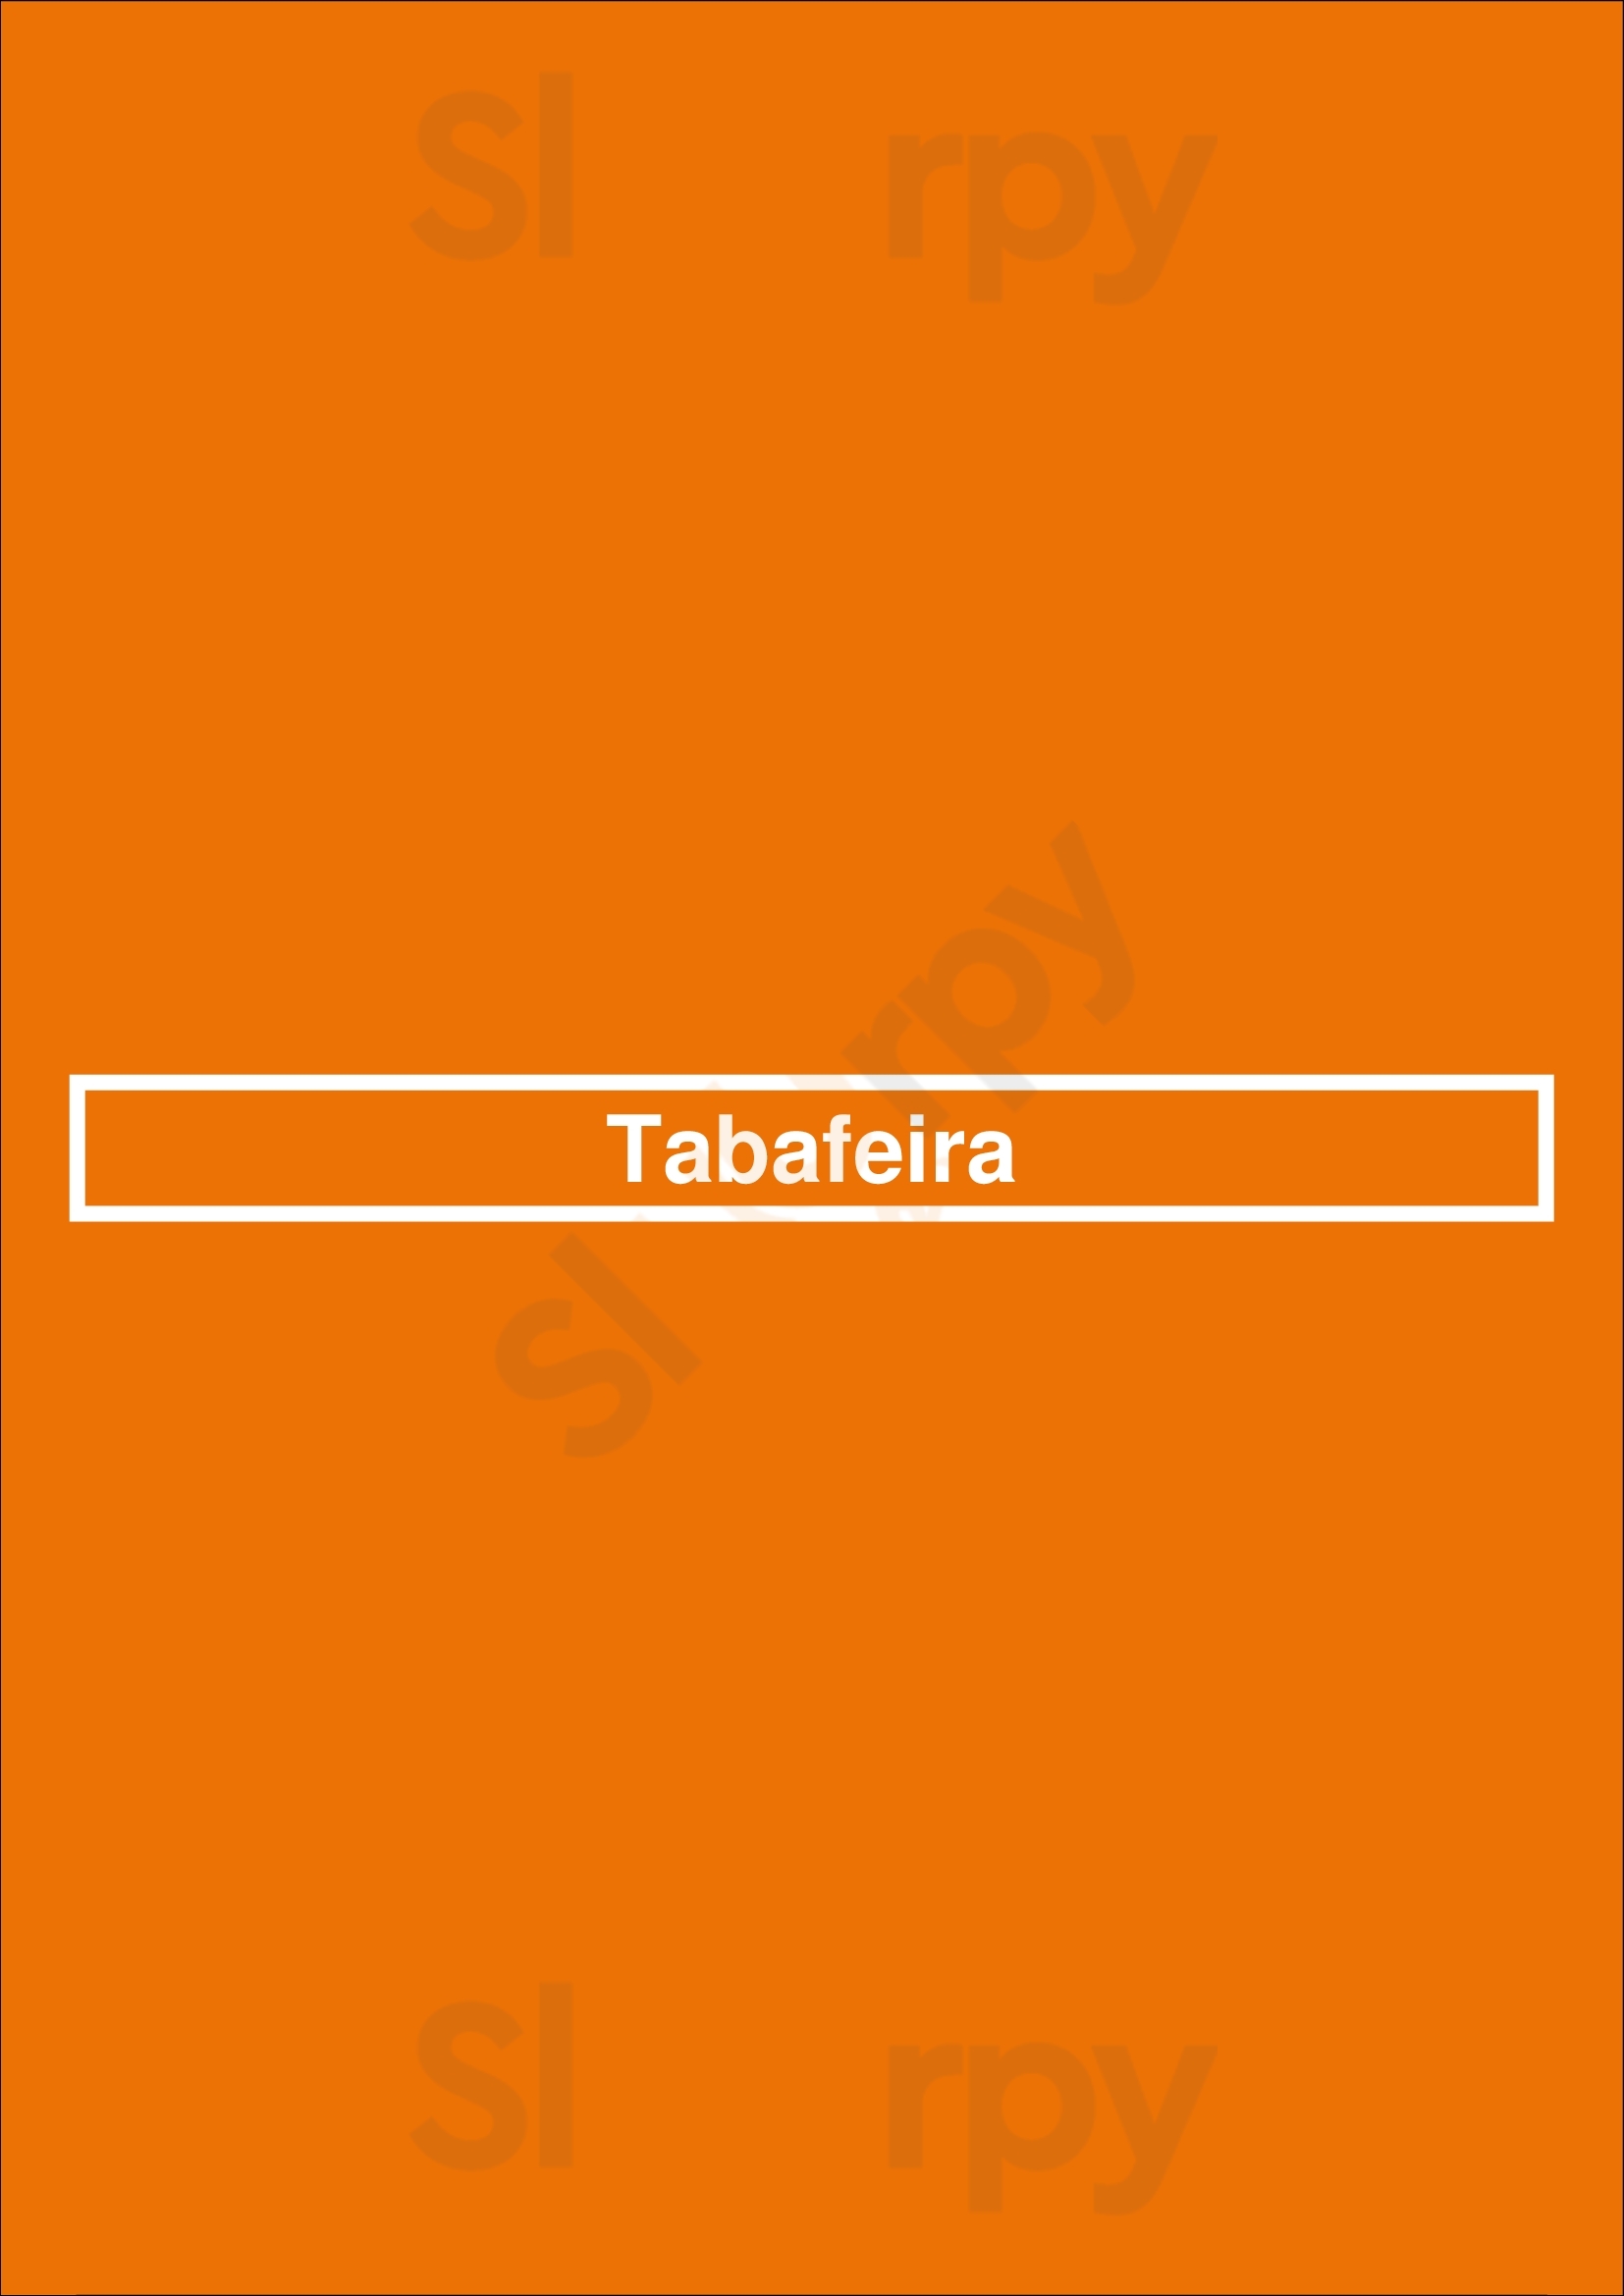 Tabafeira Porto Menu - 1